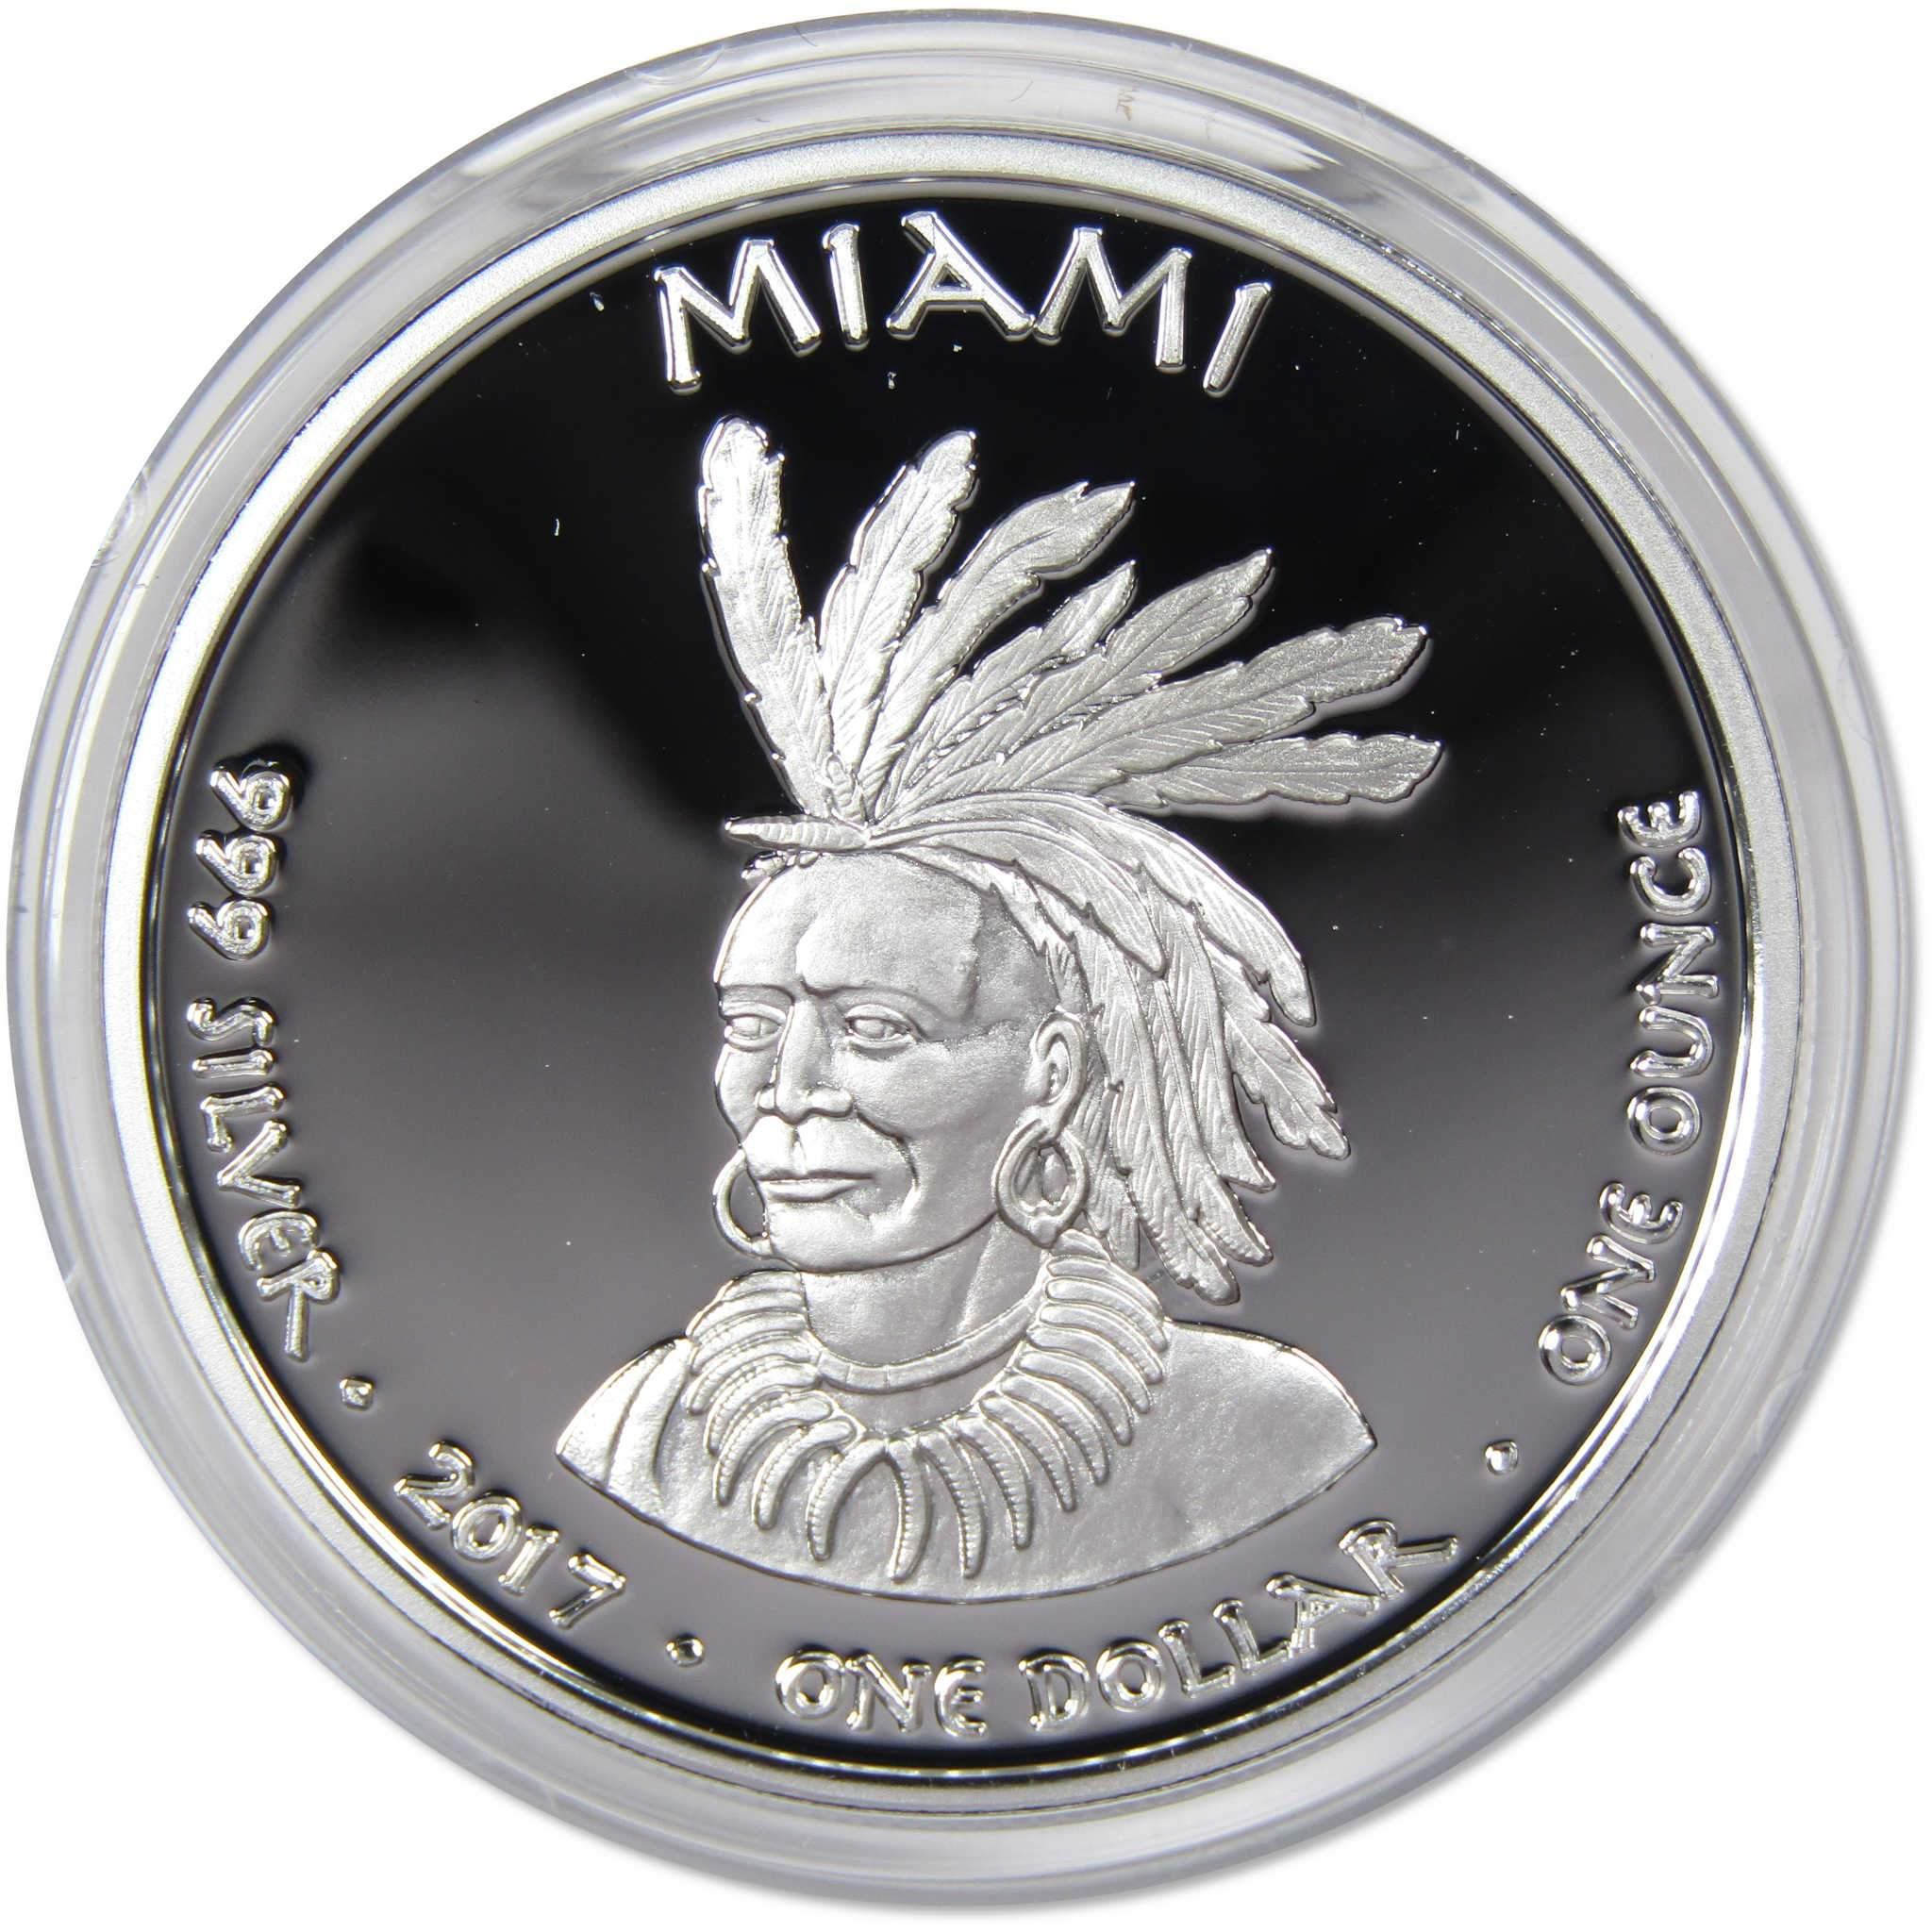 2017 Native American Jamul Miami Indiana Mink 1 oz .999 Fine Silver $1 Proof